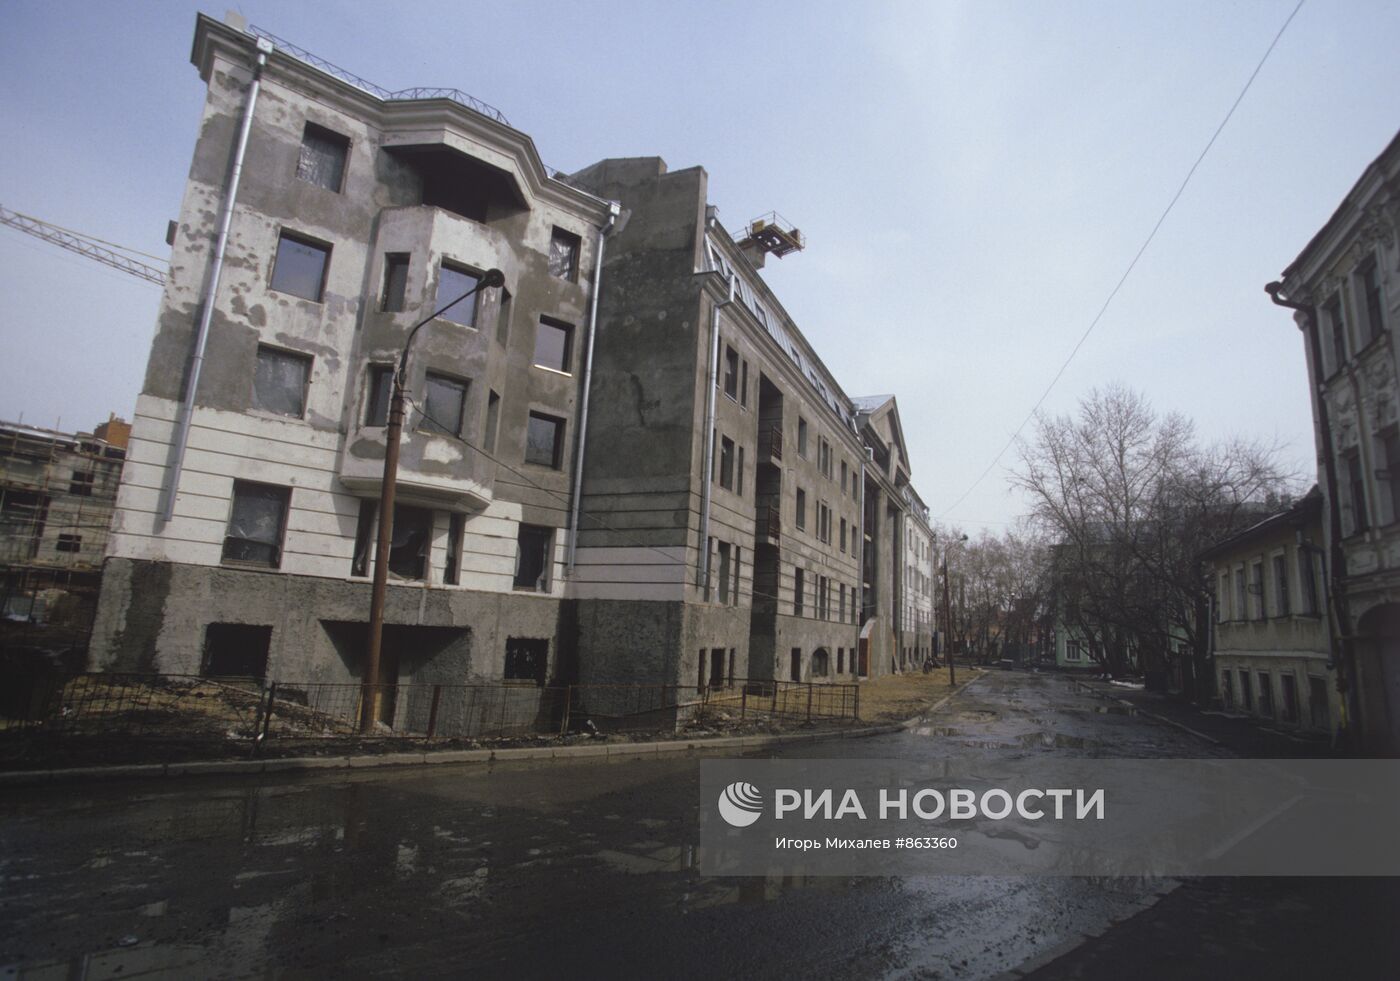 Строительство на улице Остоженка в Москве